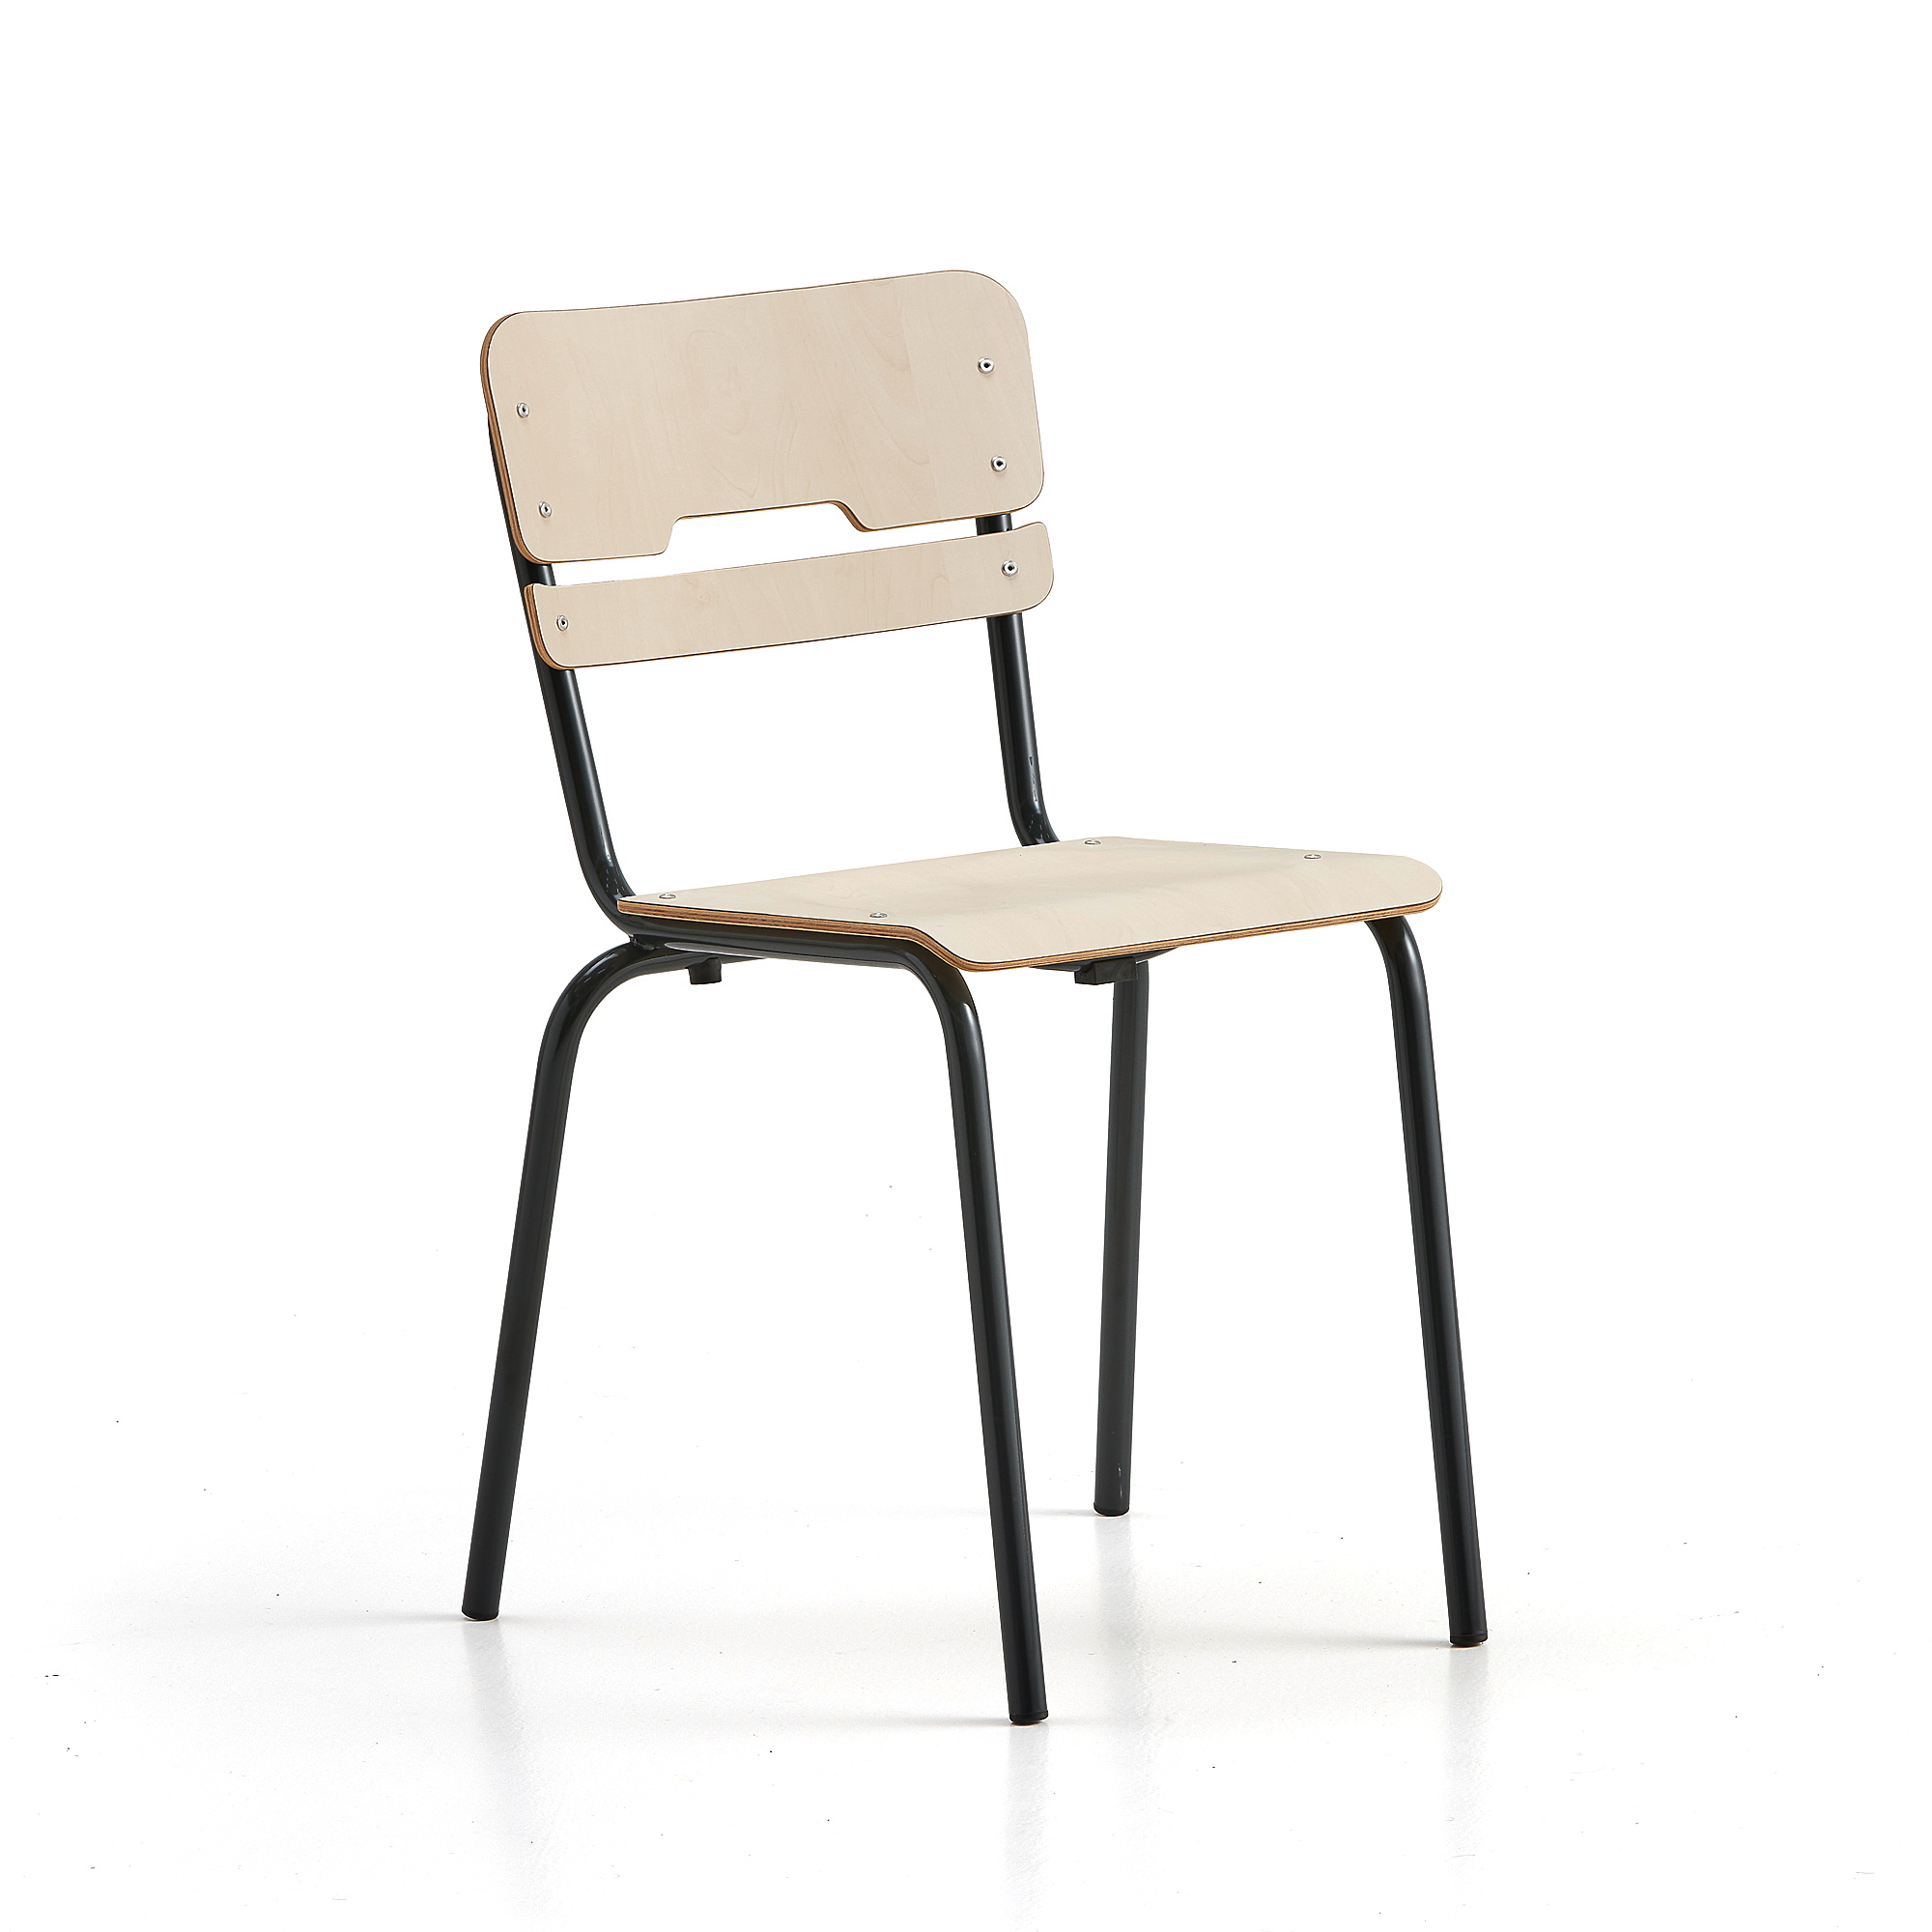 Školní židle SCIENTIA, sedák 360x360 mm, výška 460 mm, antracitová/bříza